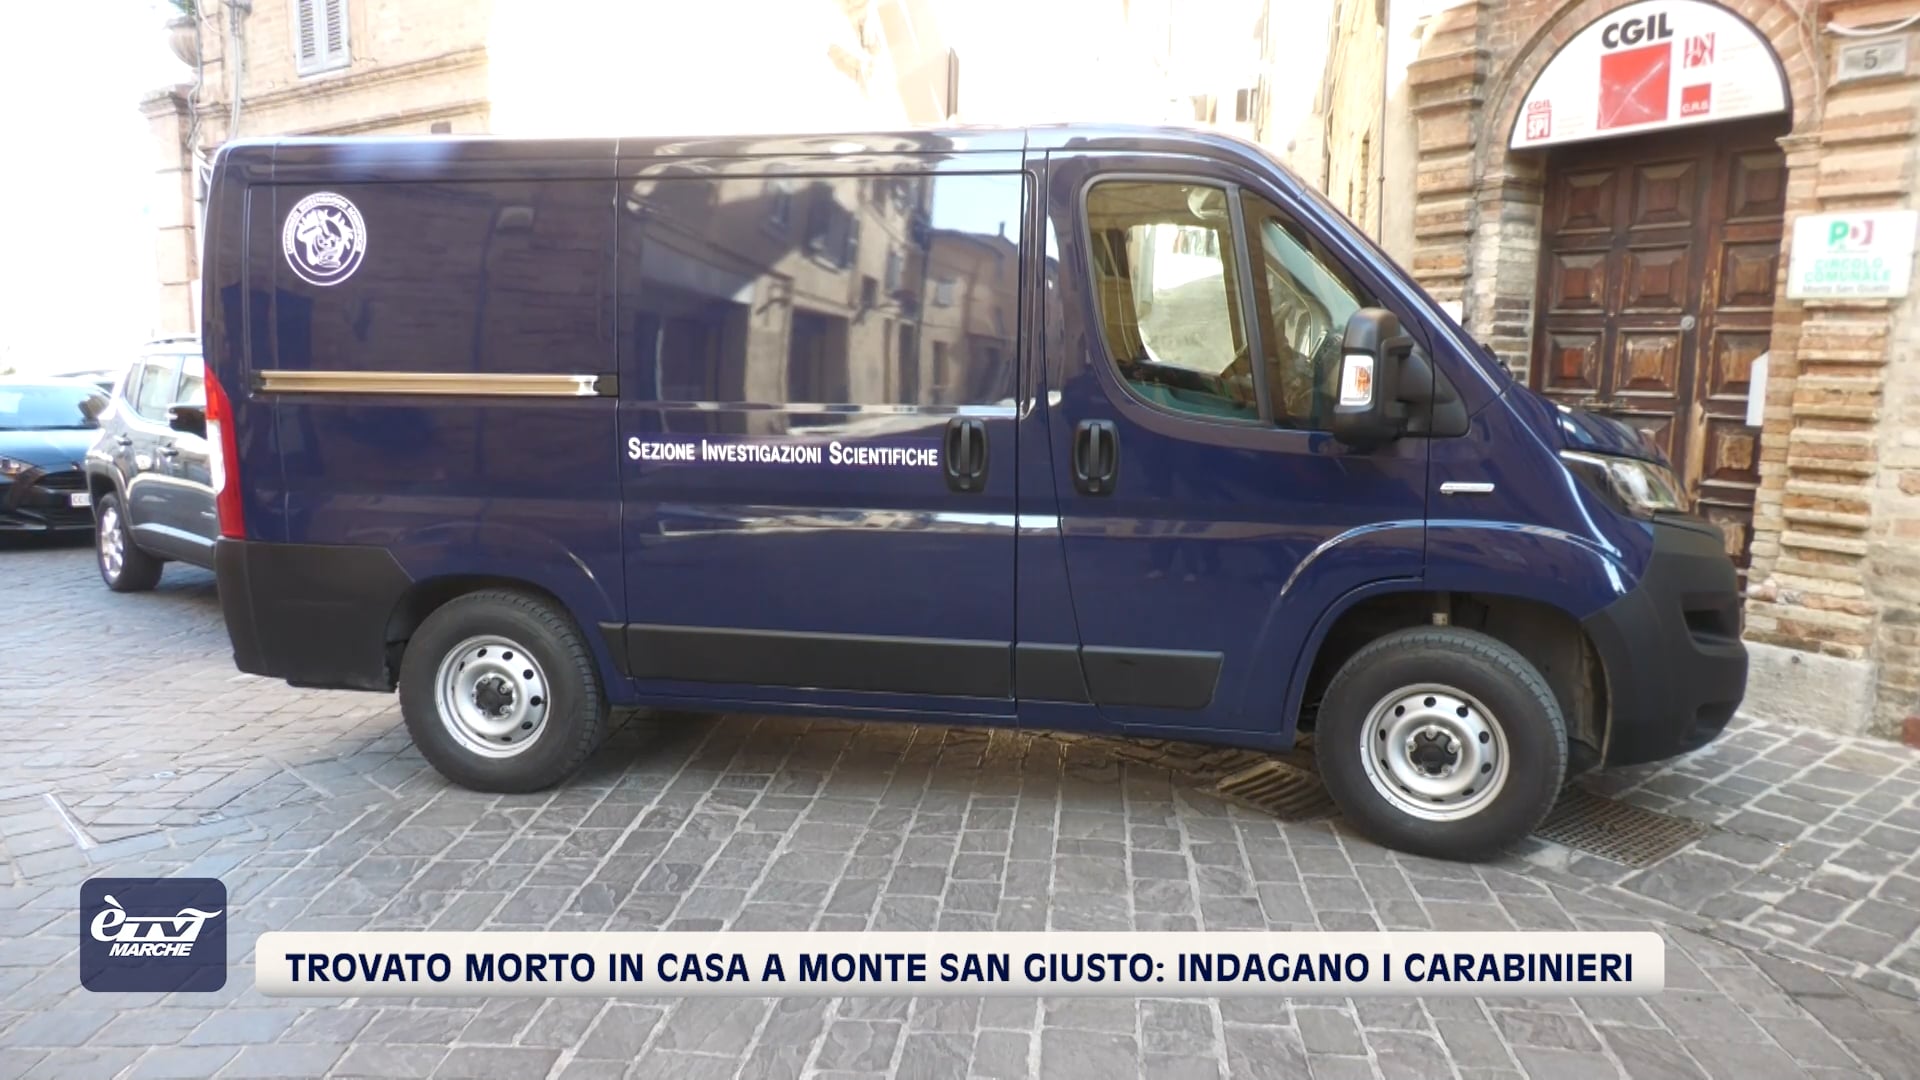 Trovato morto in casa a Monte San Giusto: indagano i Carabinieri - VIDEO